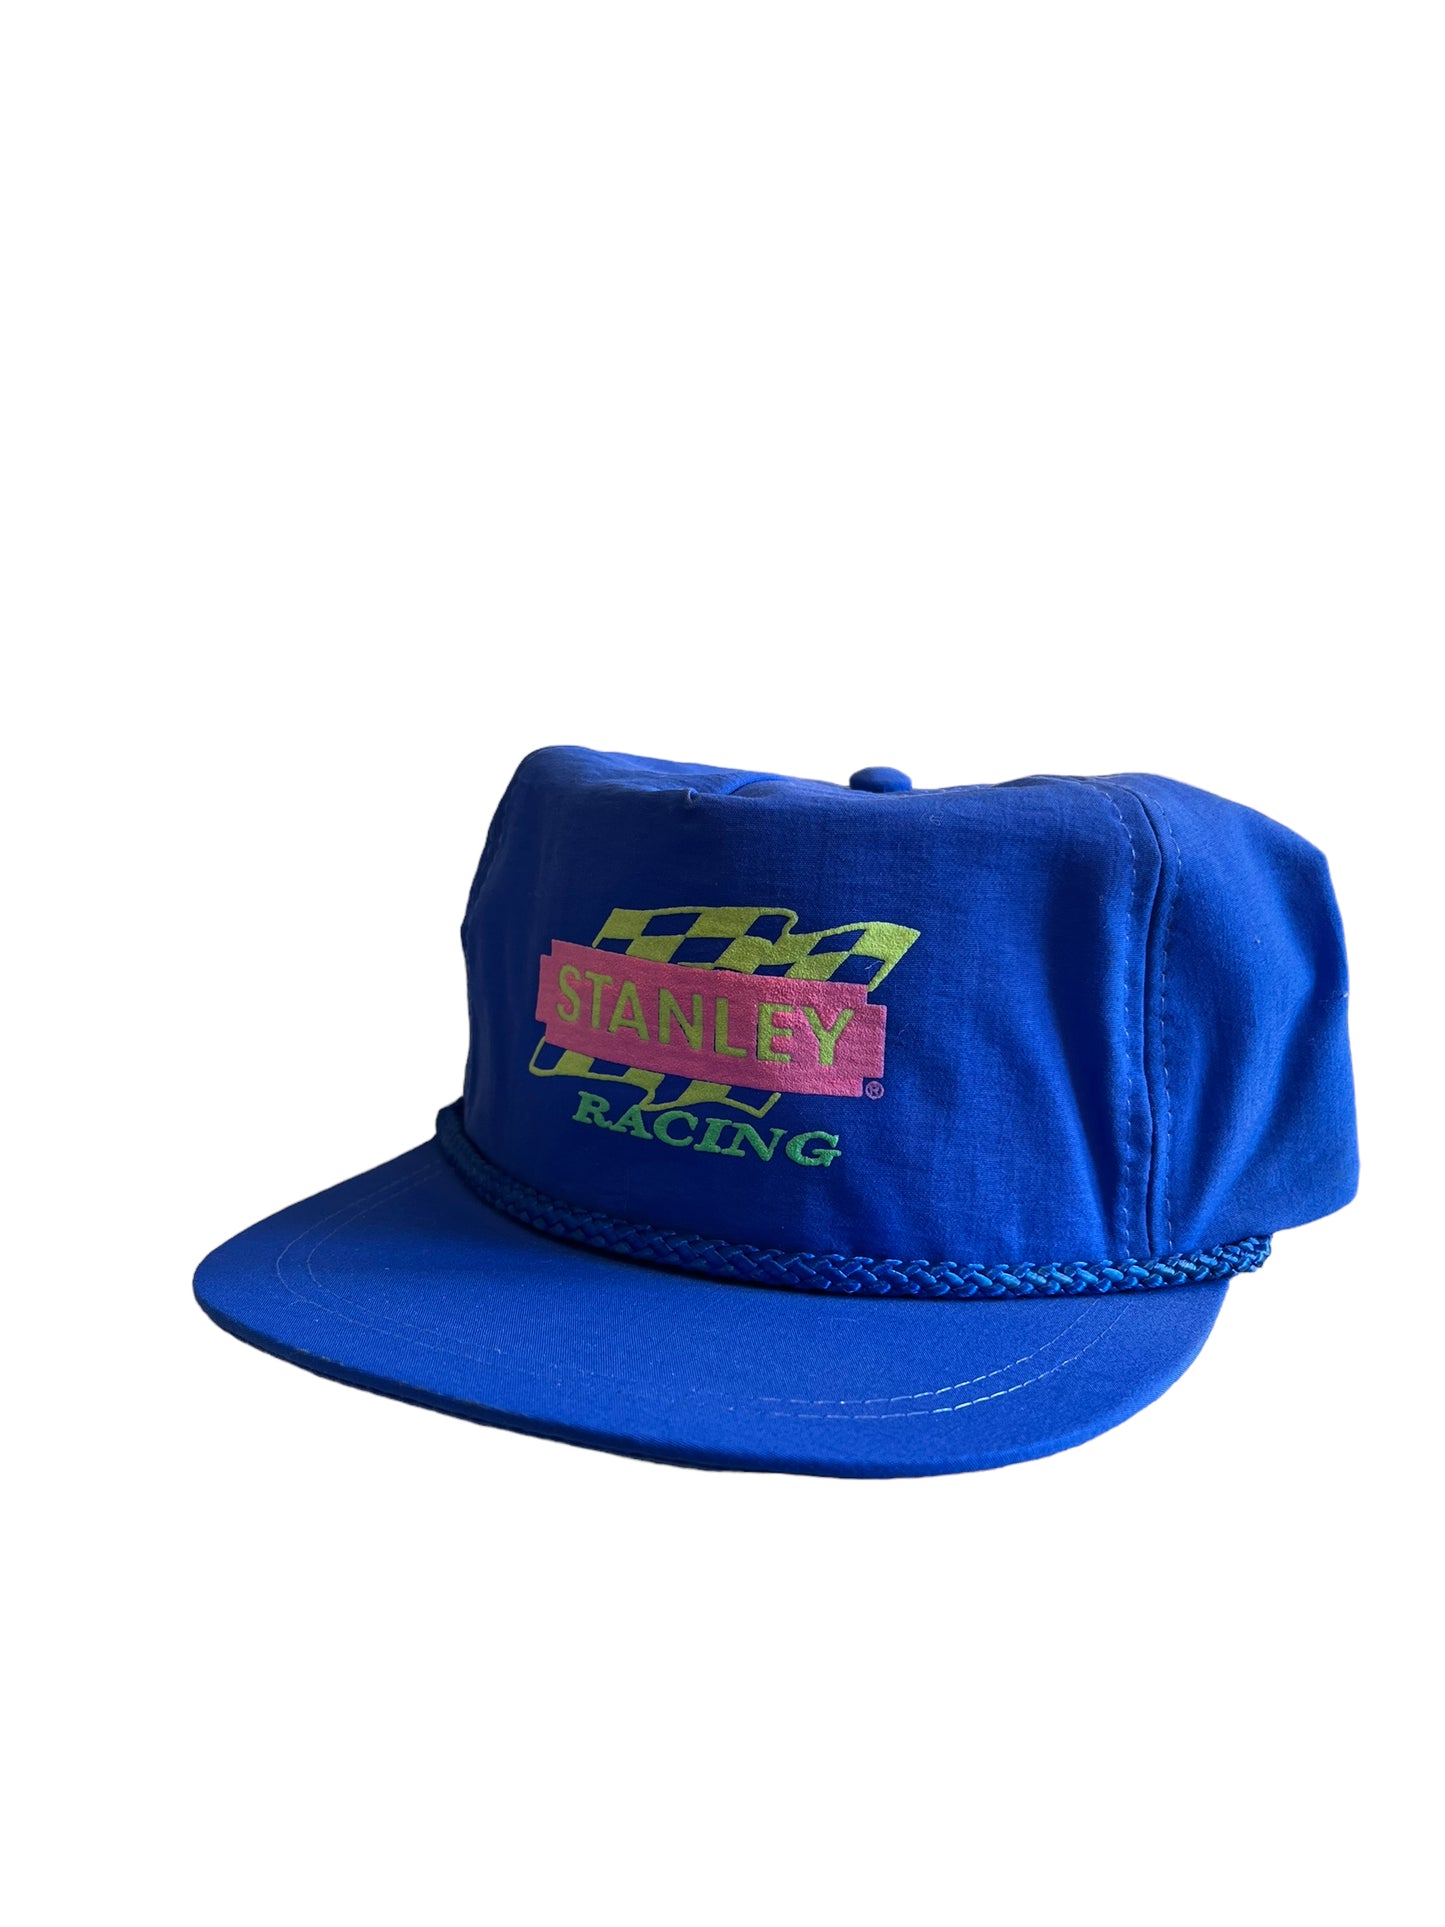 Vintage Stanley Racing Snapback Hat Brand New